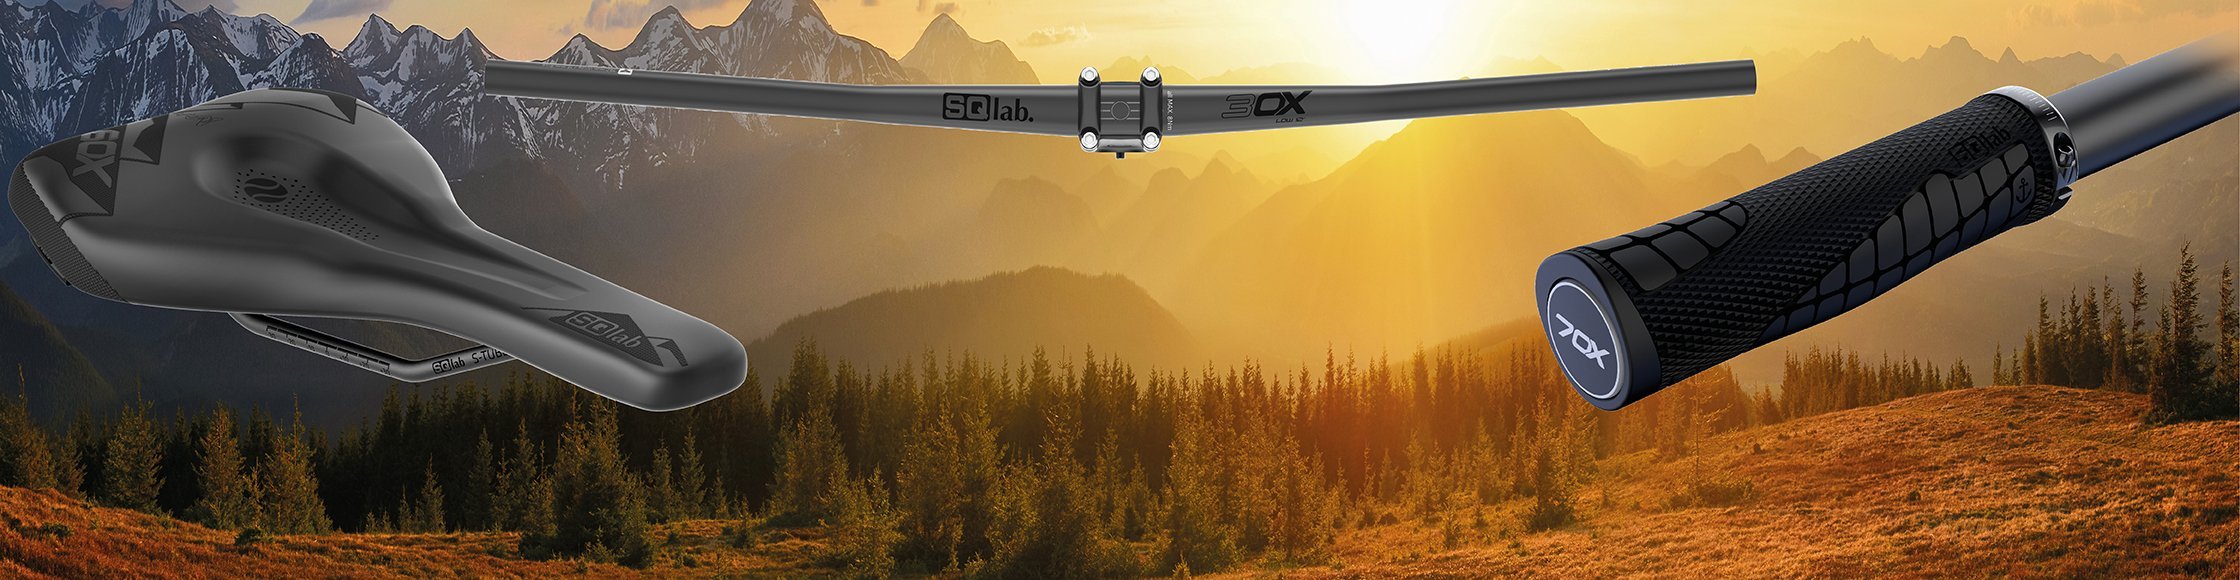 SQlab ergonomische Lenker, Sättel und Griffe der OX Serie